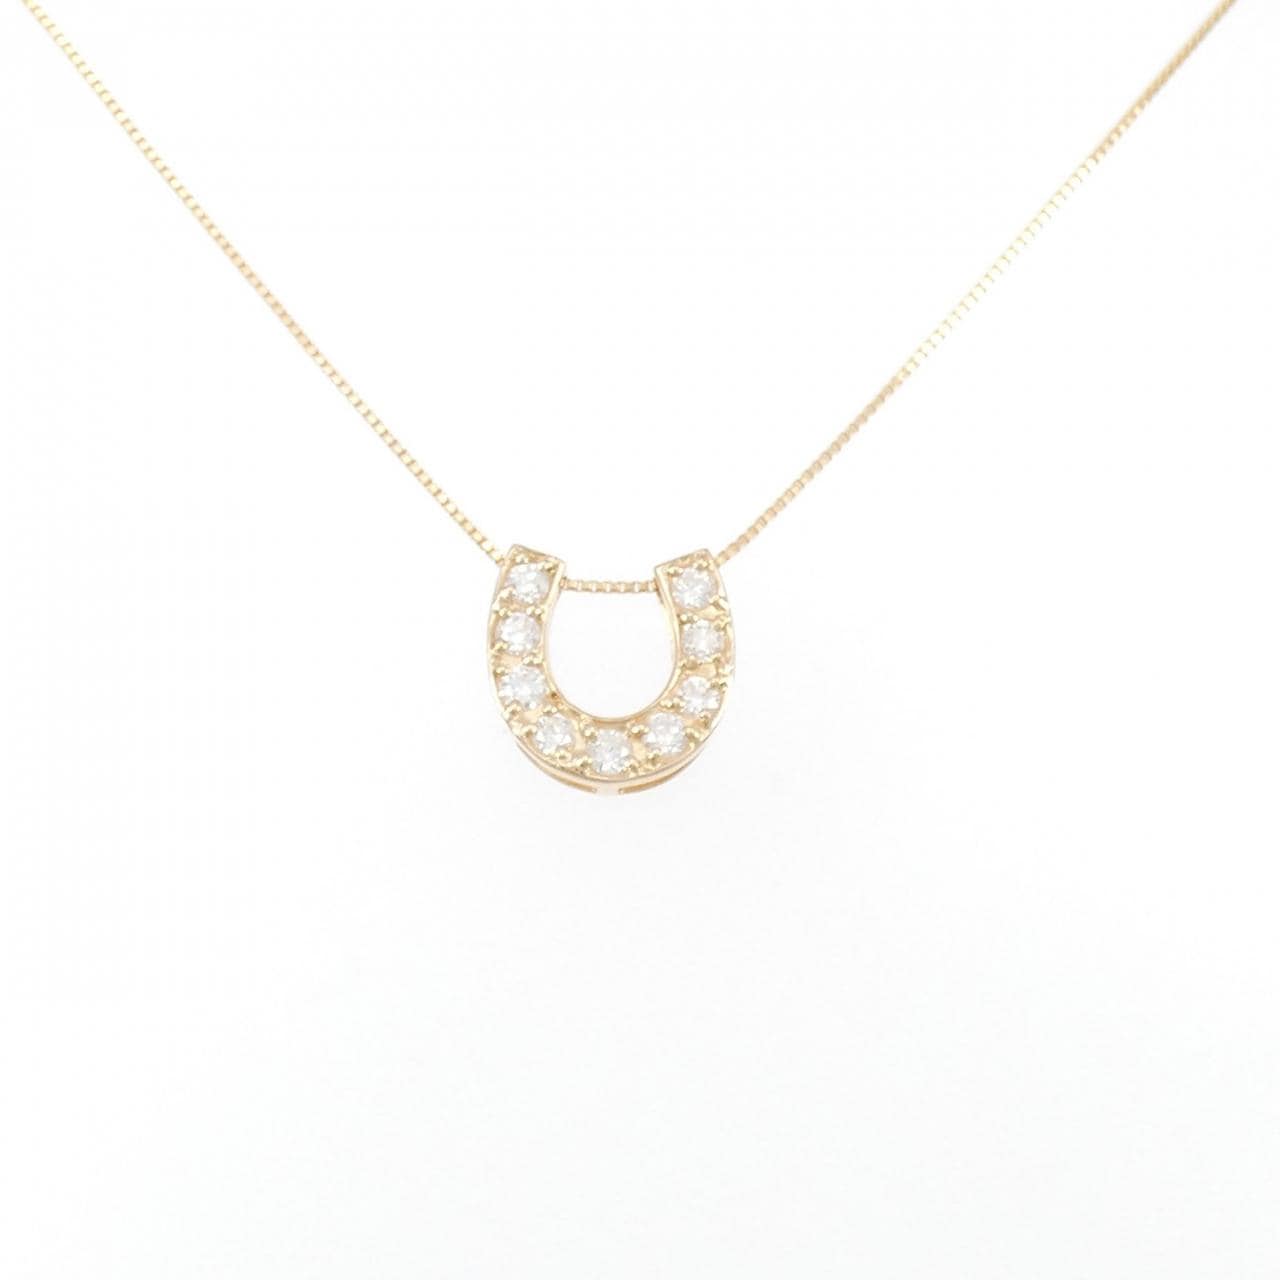 K18PG Horseshoe Diamond Necklace 0.30CT